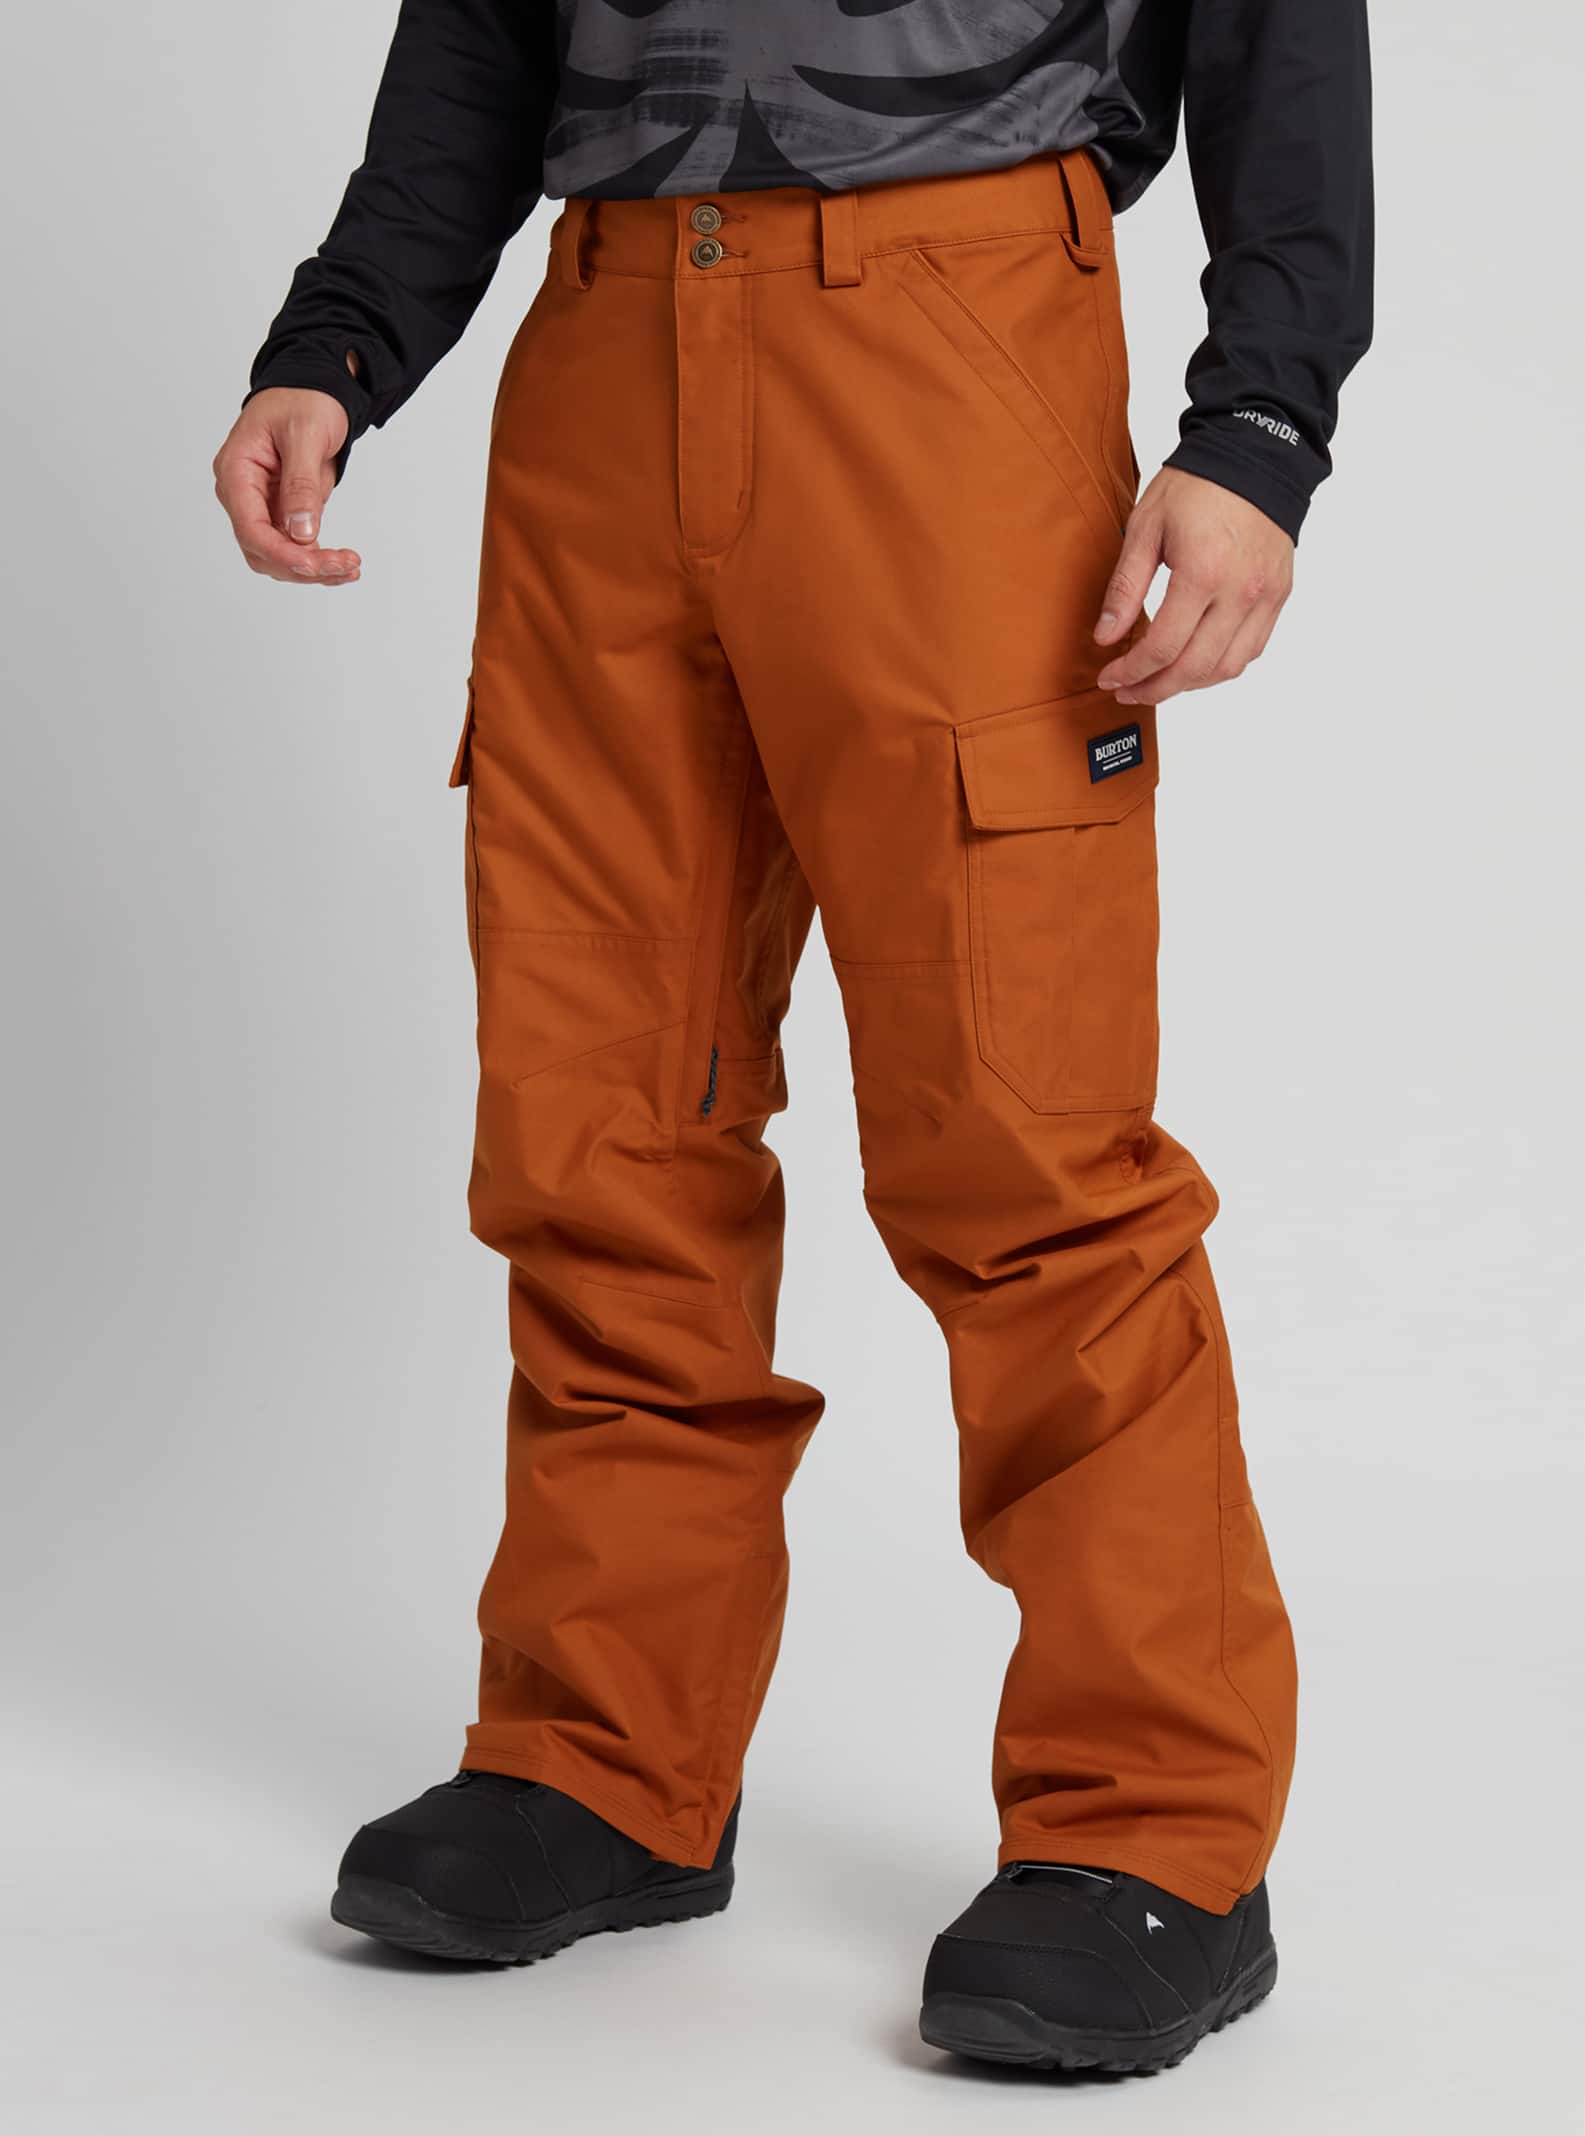 Se asemeja raya tomar Men's Burton Cargo Pant - Short | Burton.com Winter 2021 ES